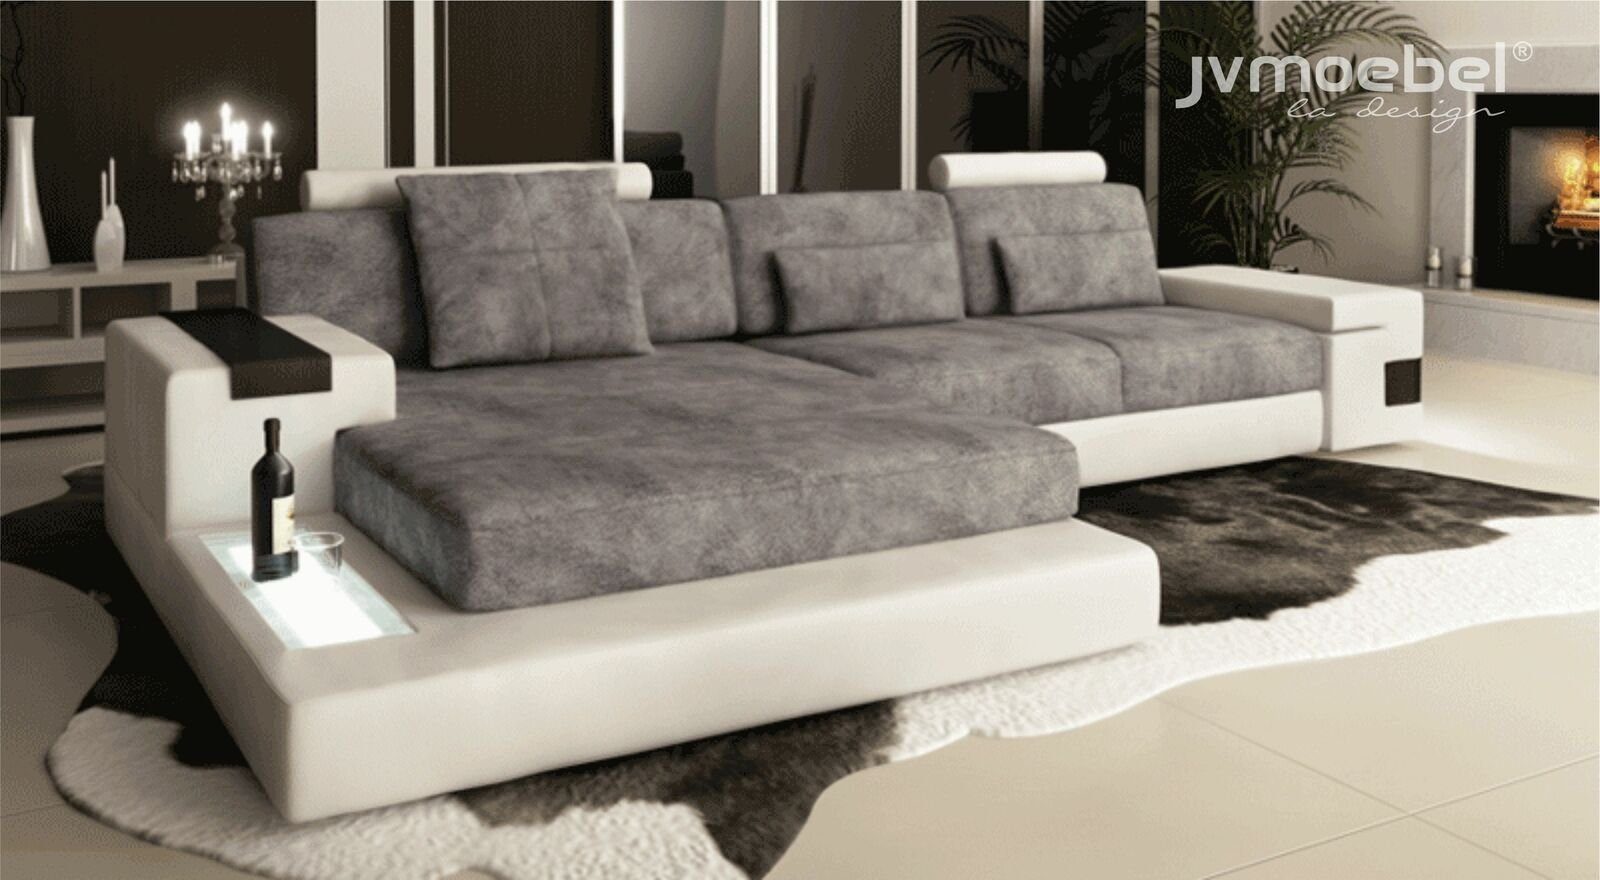 TextilLeder JVmoebel Ecksofa Wohnzimmer Polster Ecksofa Sofa Design, L-Form Made in Grau/Weiß Europe